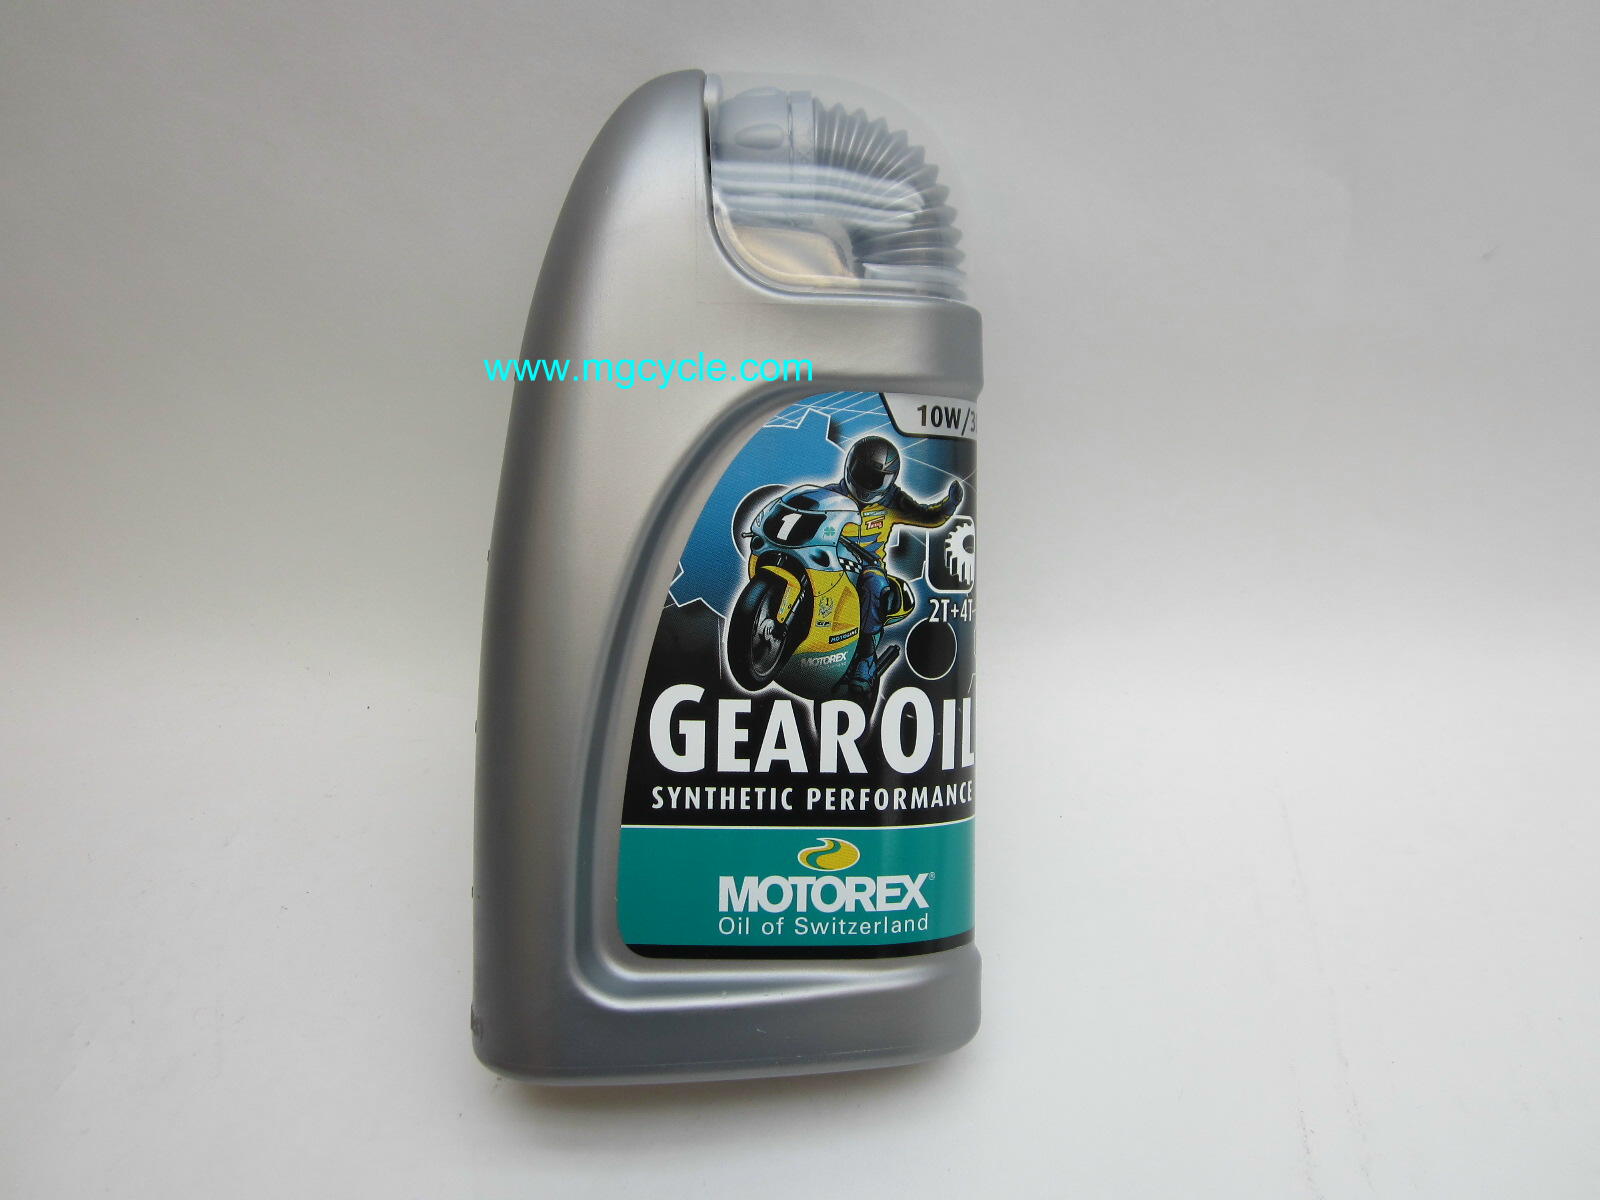 Motorex GL4 gear oil, 1 liter